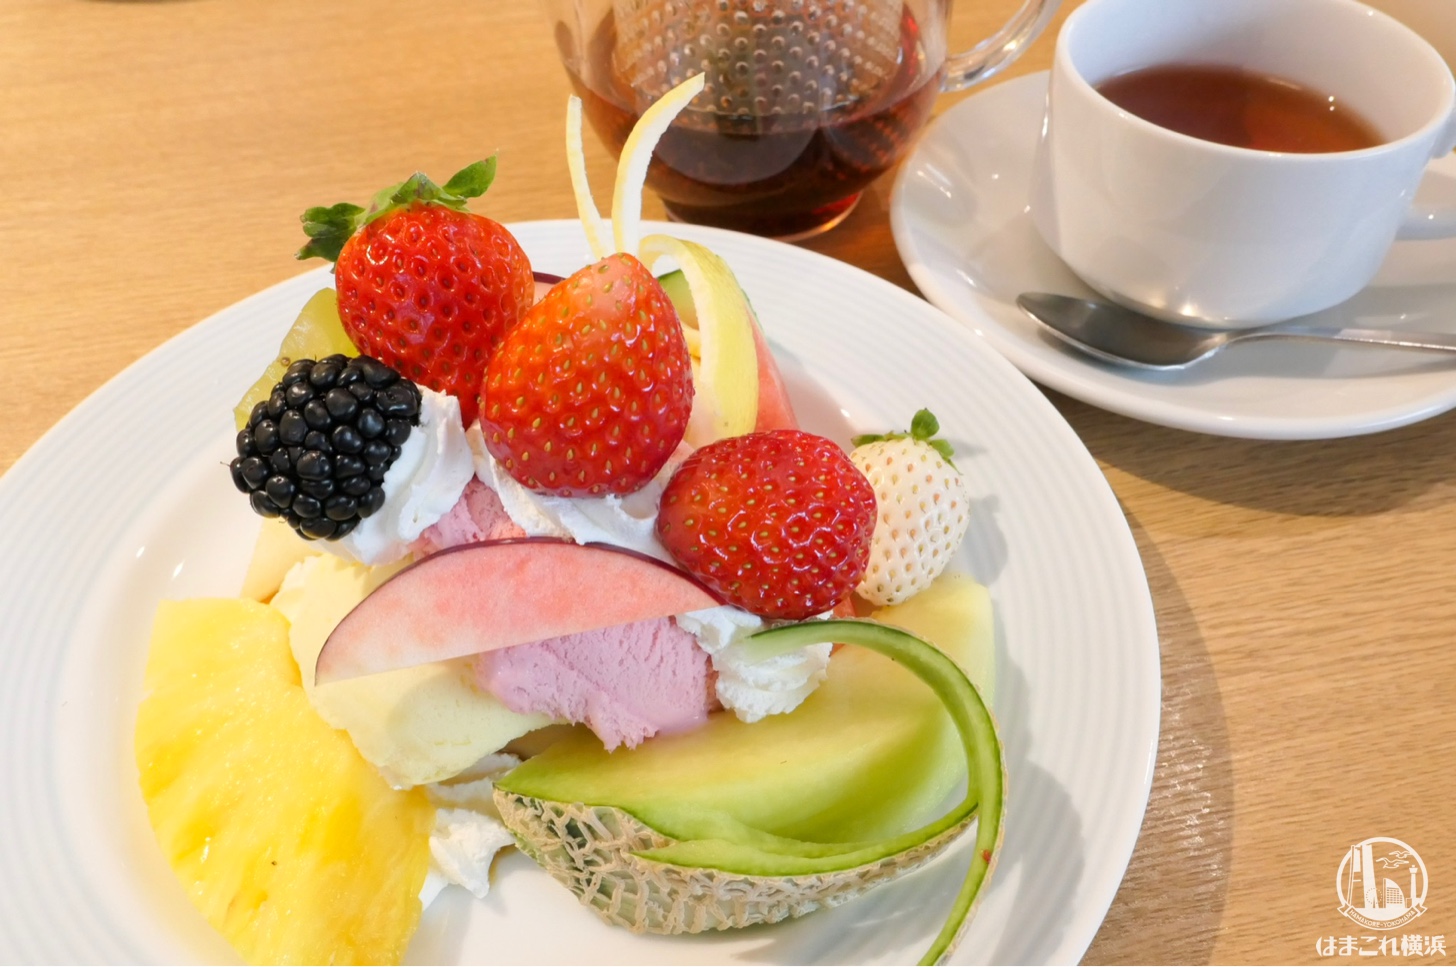 横浜「果実園リーベル」のプリンアラモードがフルーツたっぷりお得な贅沢、カフェ利用